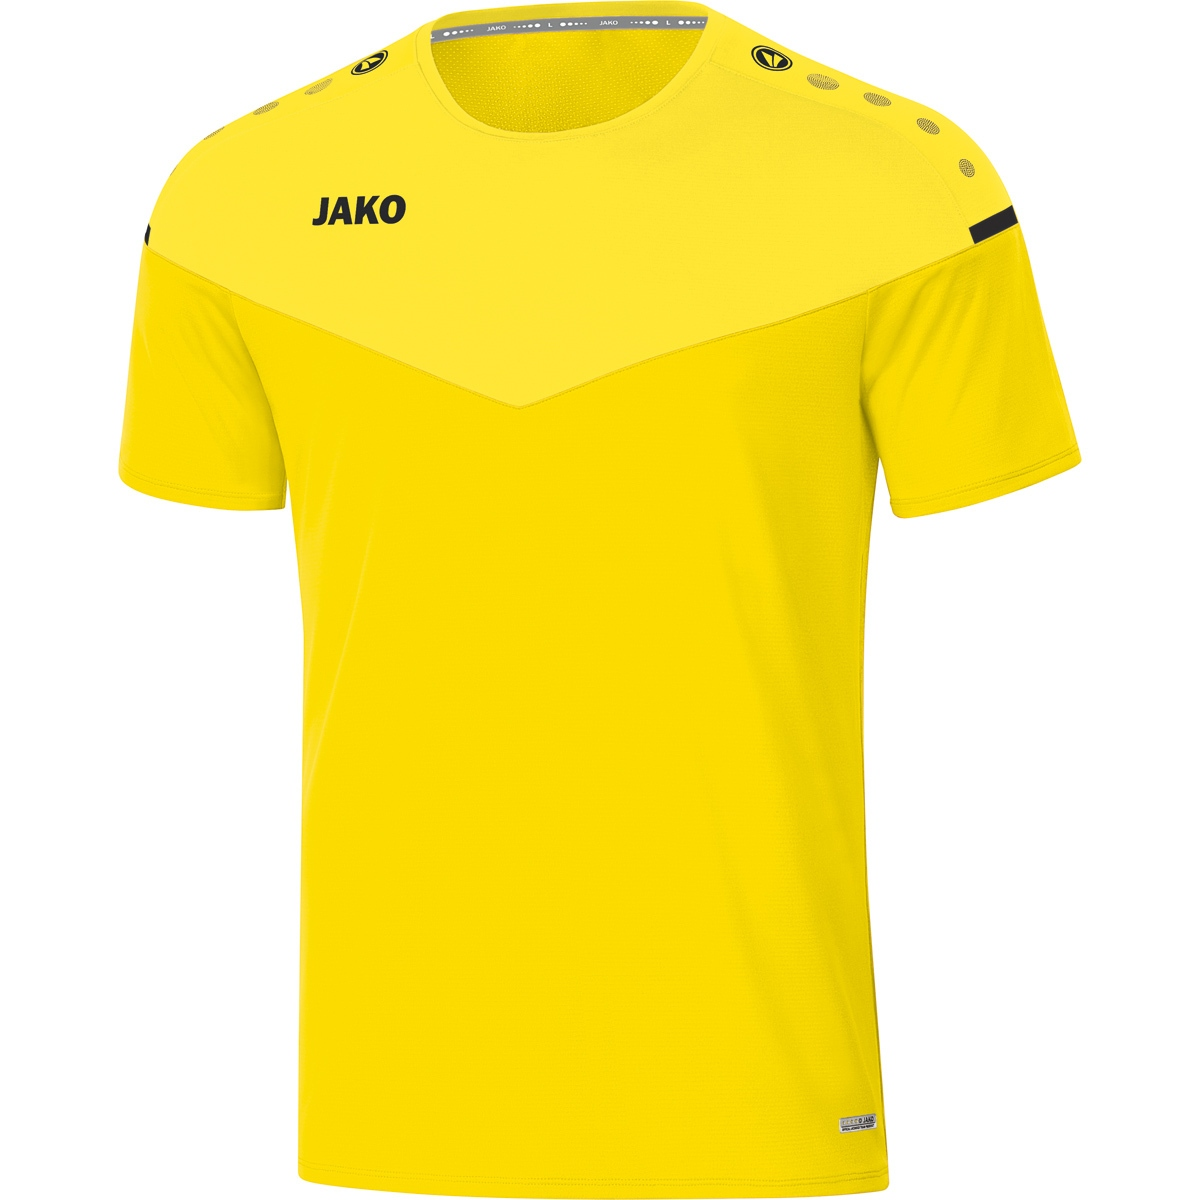 JAKO T-Shirt 6120 Herren, Gr. light, citro/citro 4XL, 2.0 Champ